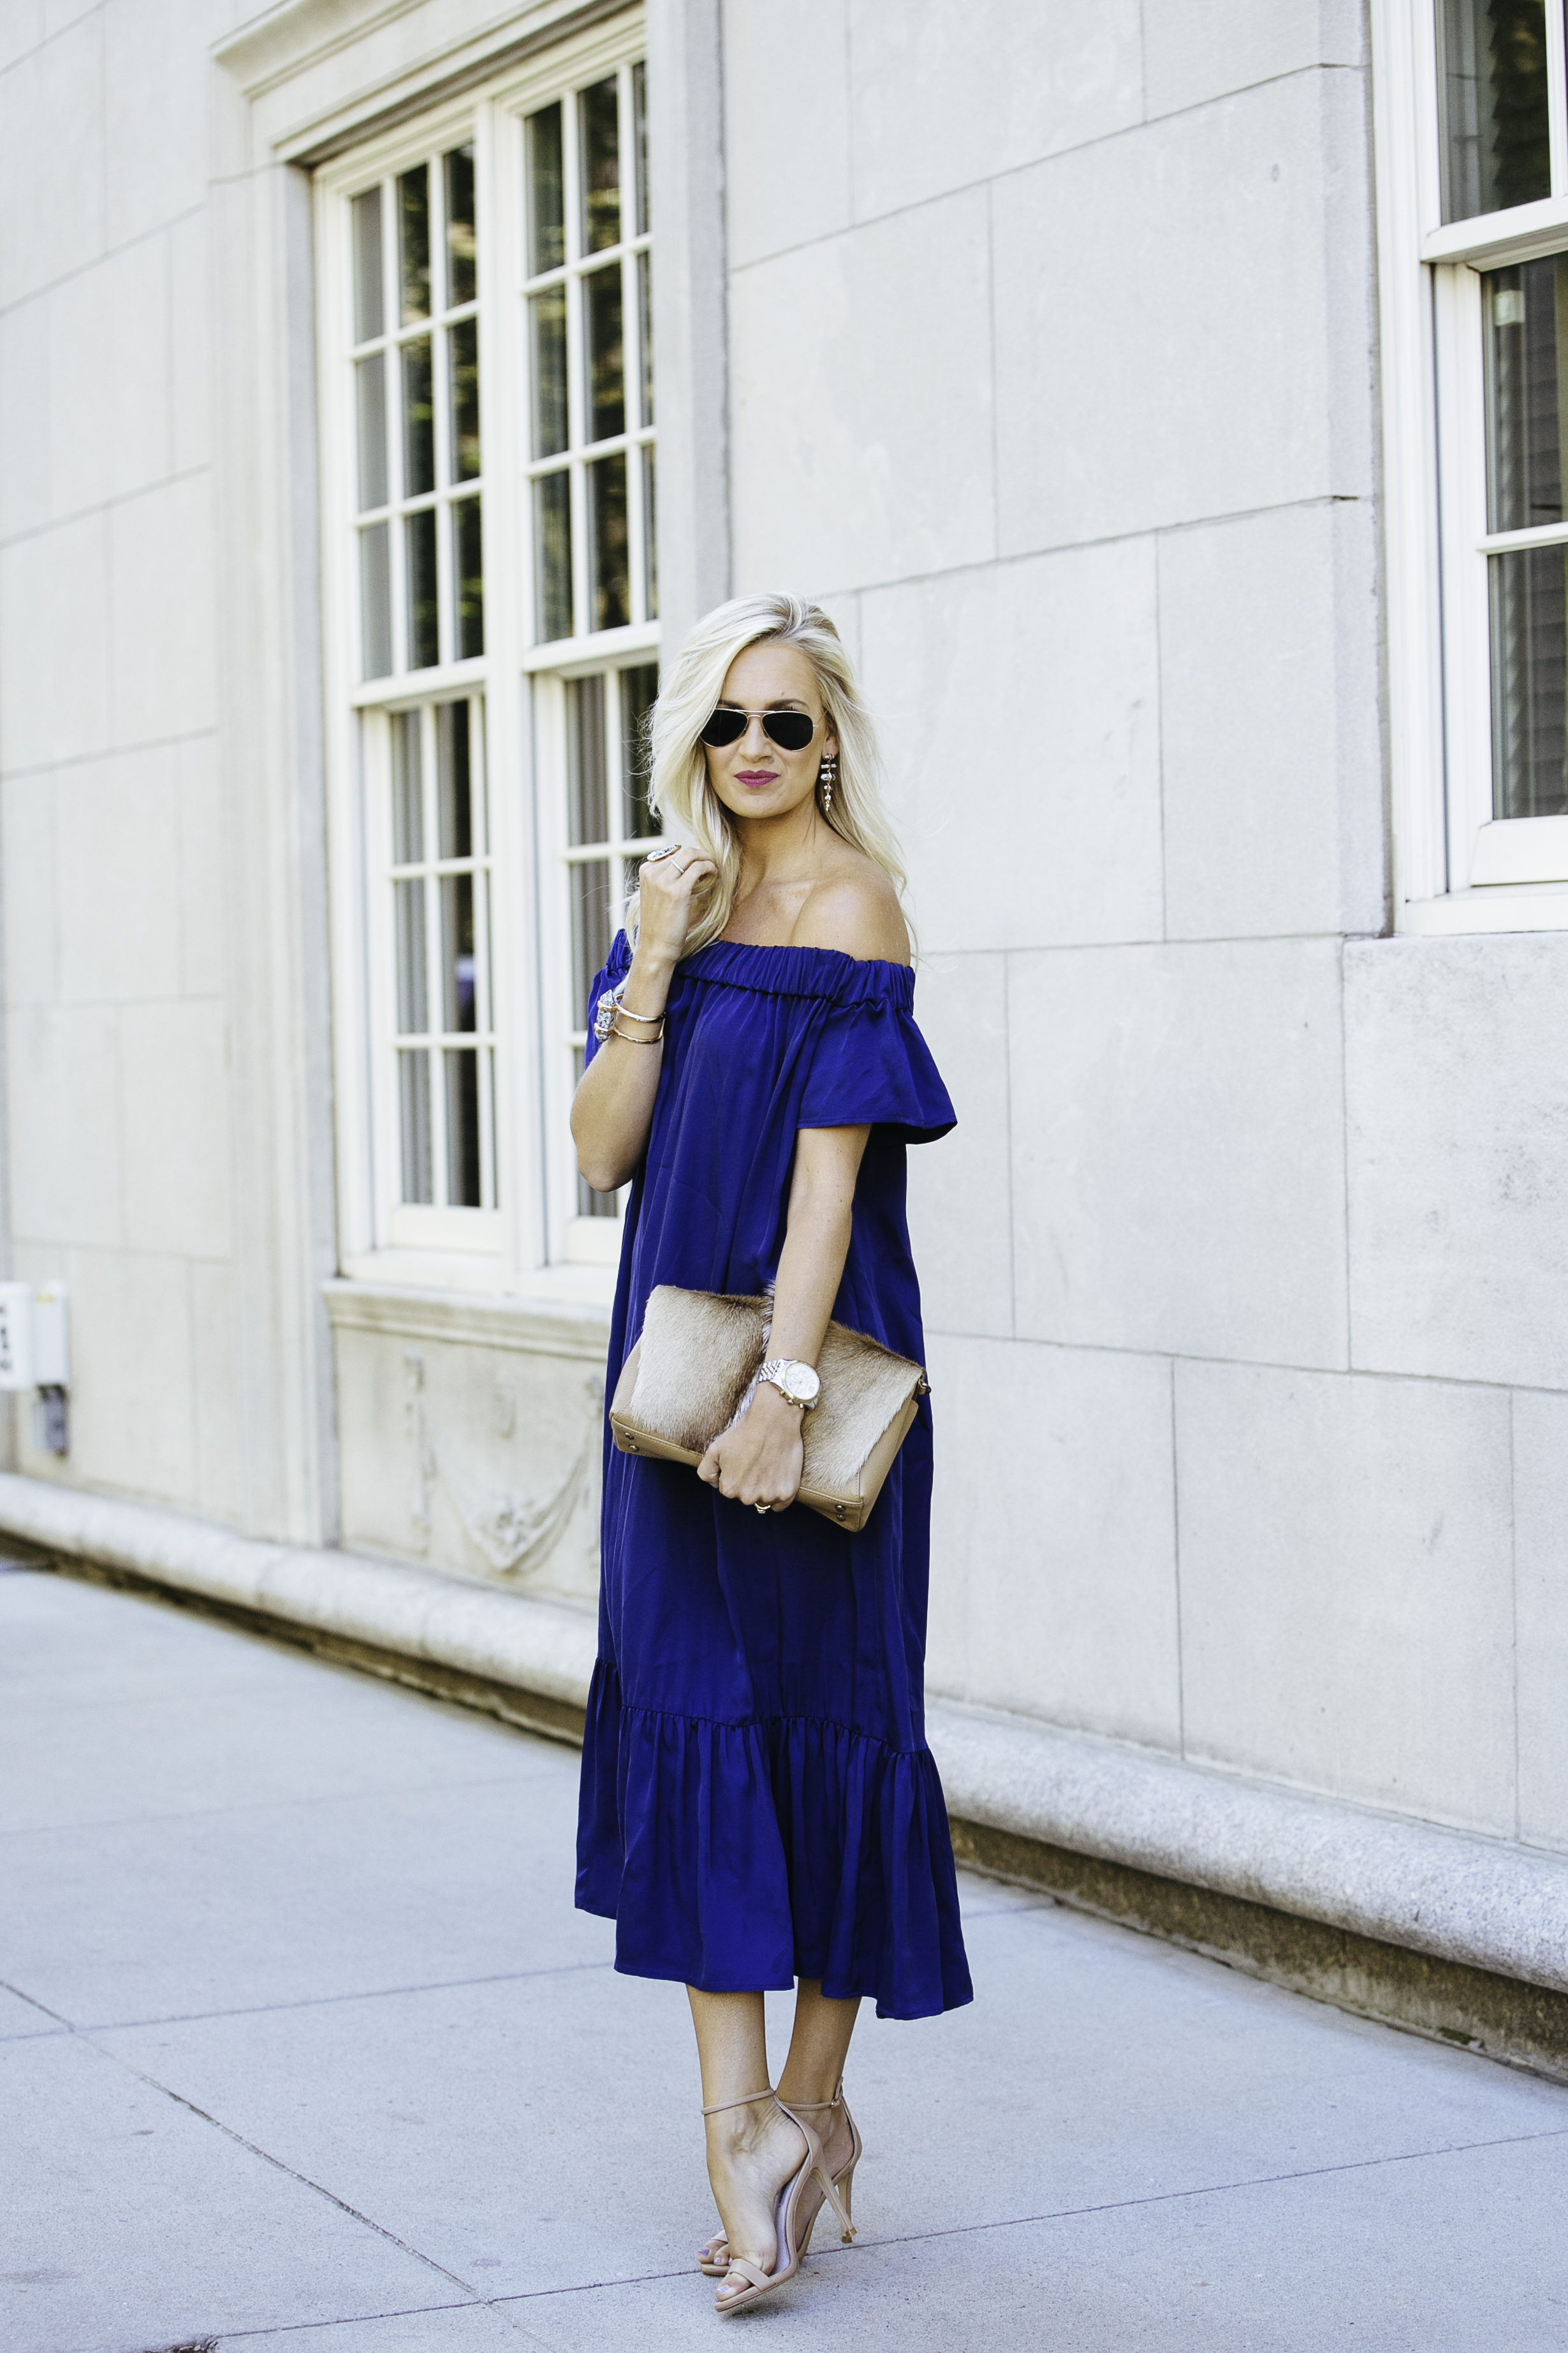 Sea NY Blue Dress + Python Bag - Mckenna Bleu